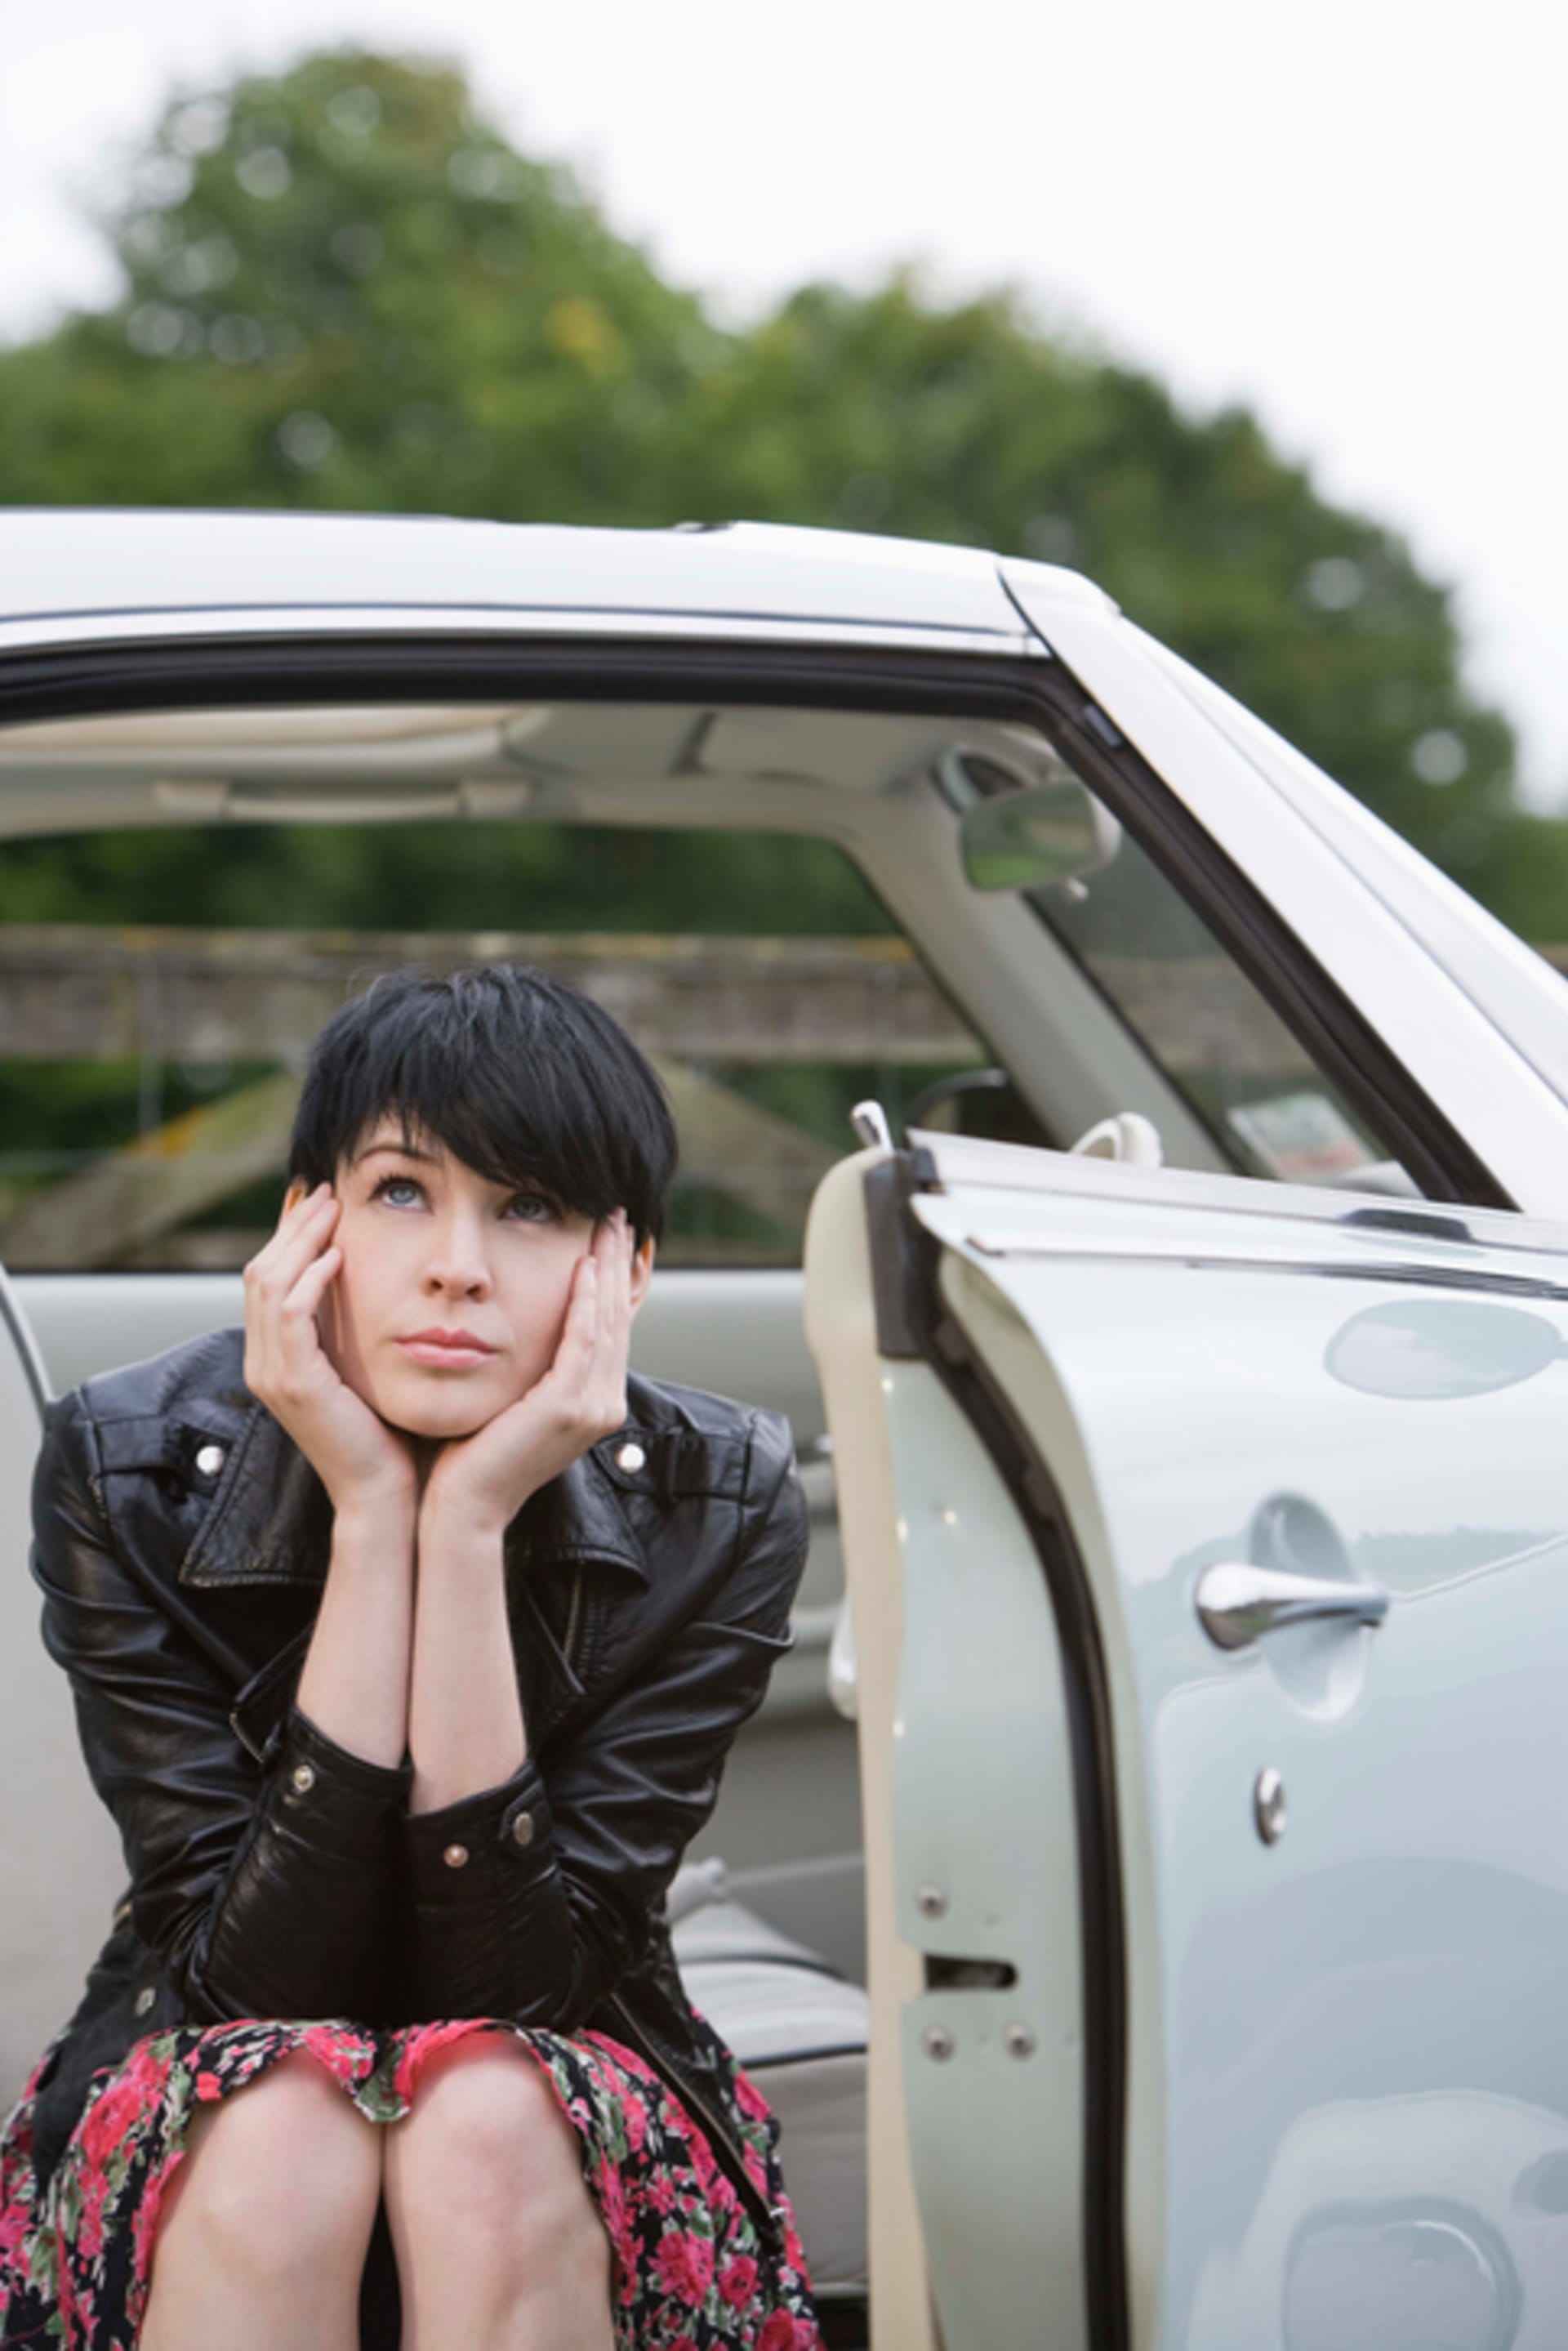 7 vět, které nikdy neříkejte v autě, když partner řídí sedí na autě